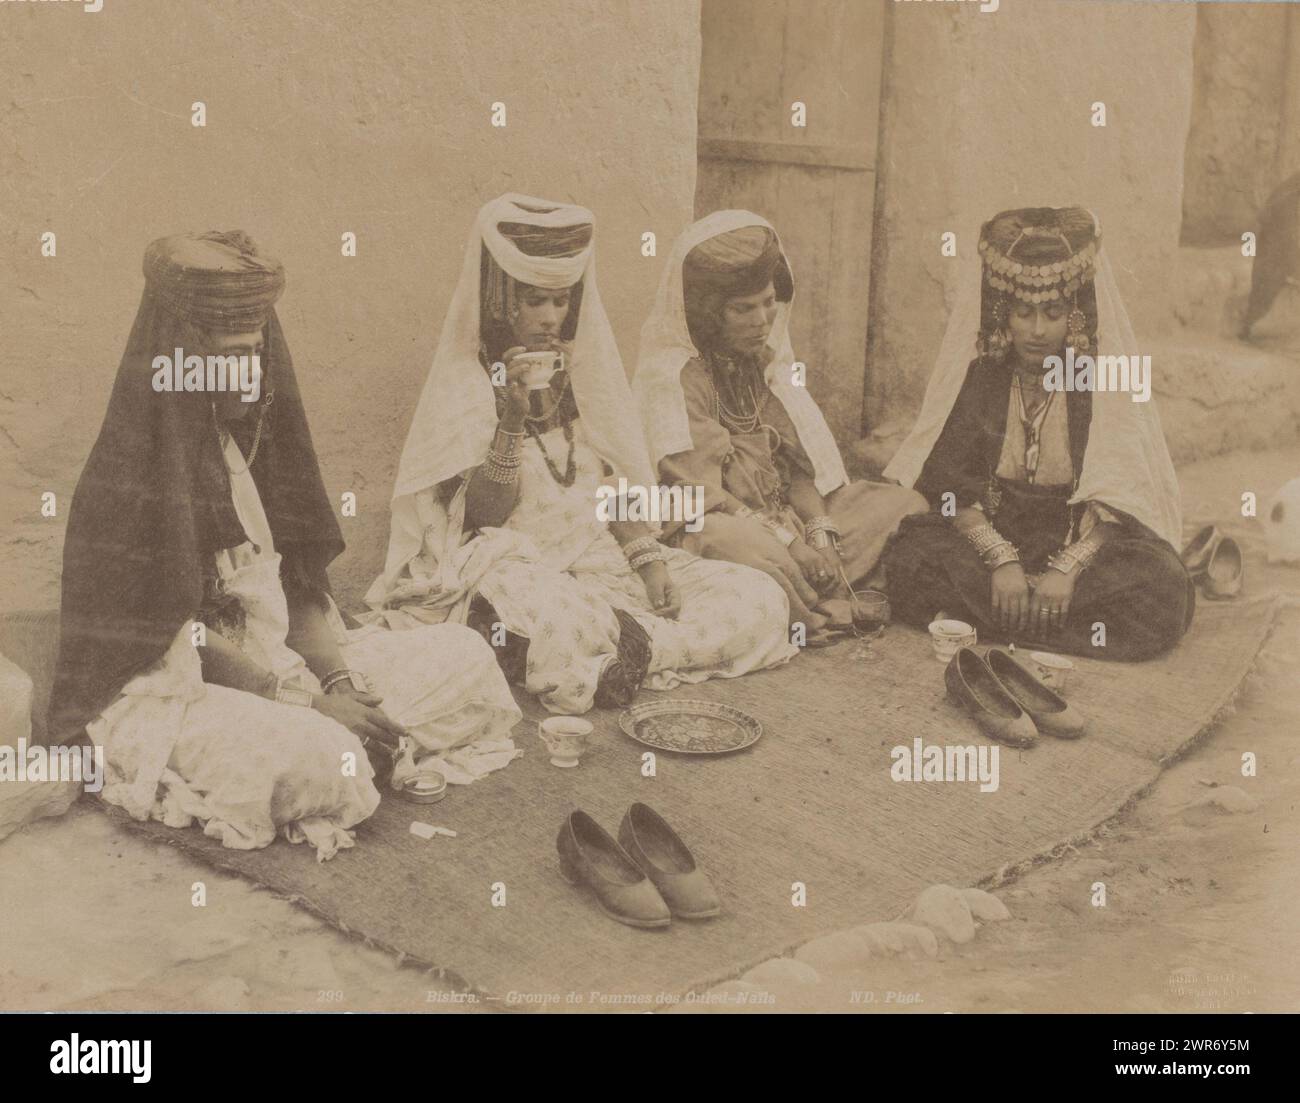 Portrait de groupe de quatre femmes Ouled Naïl inconnues en Algérie, Biskra, groupe de femmes des Ouled-Naïls (titre sur objet), Neurdein Frères, Algerije, 1863 - 1900, papier, tirage à l'albumen, hauteur 278 mm × largeur 345 mm, photographie Banque D'Images